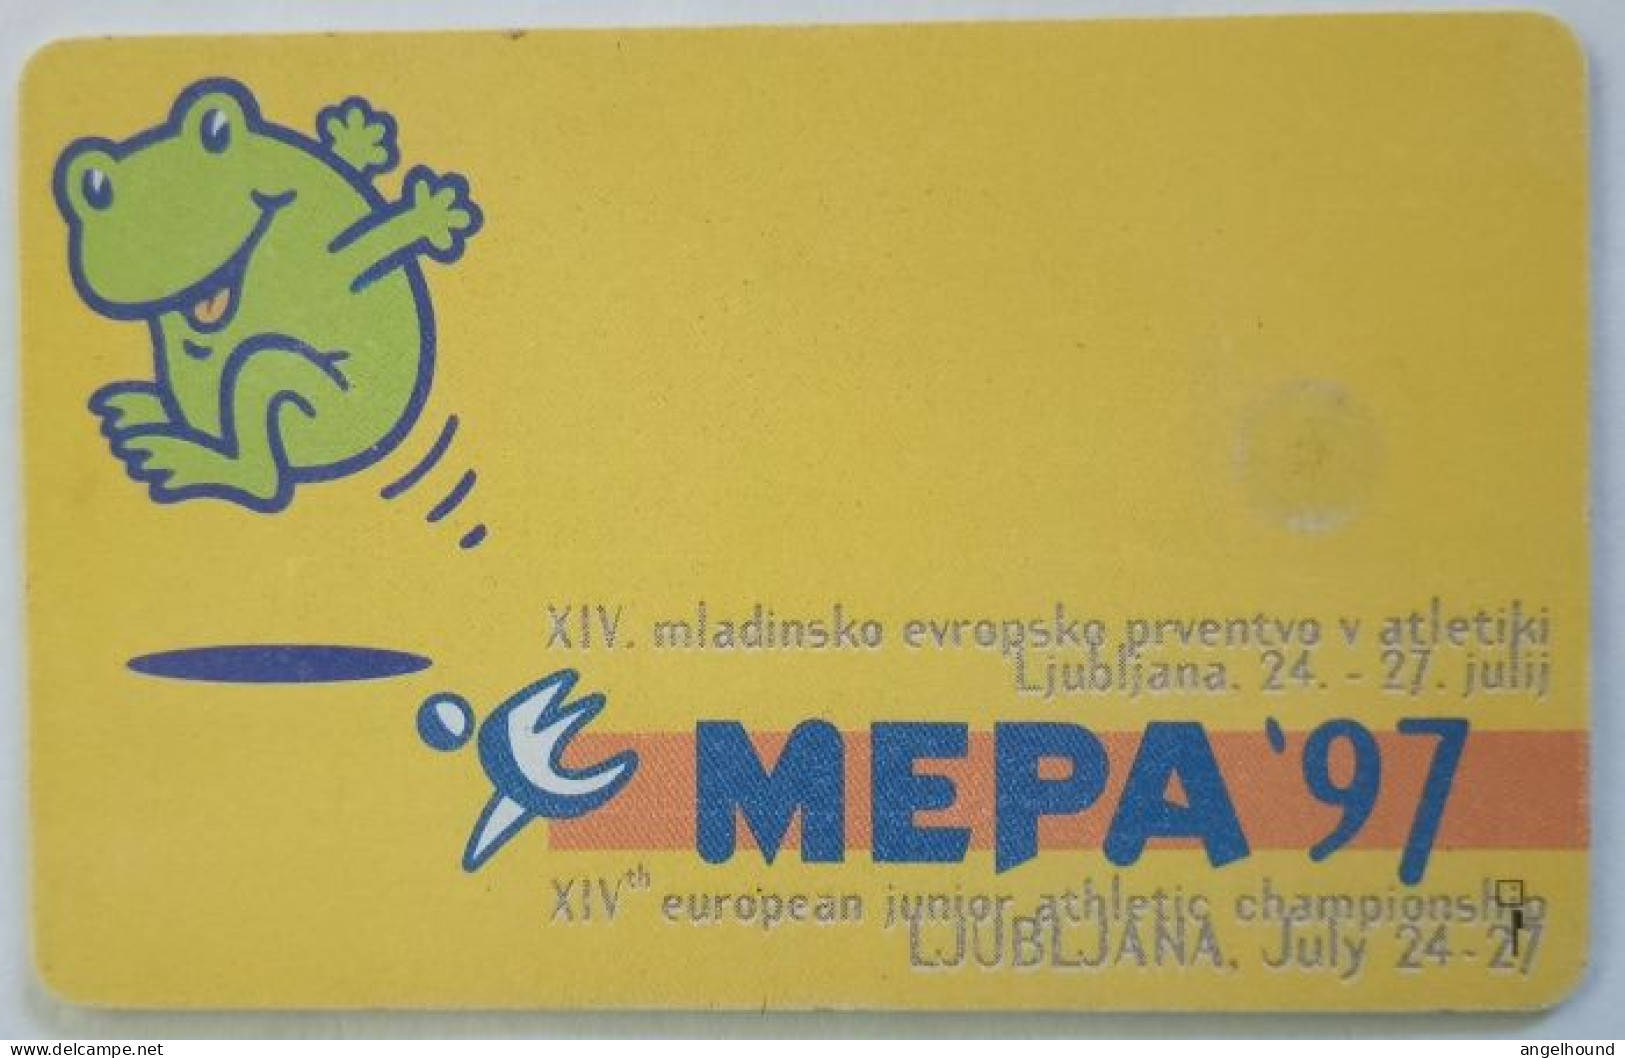 Slovenia 100 Unit  Chip Card - Kp Je Pogovor Nacin Zivljenja / MEPA ' 97 - Slovenia